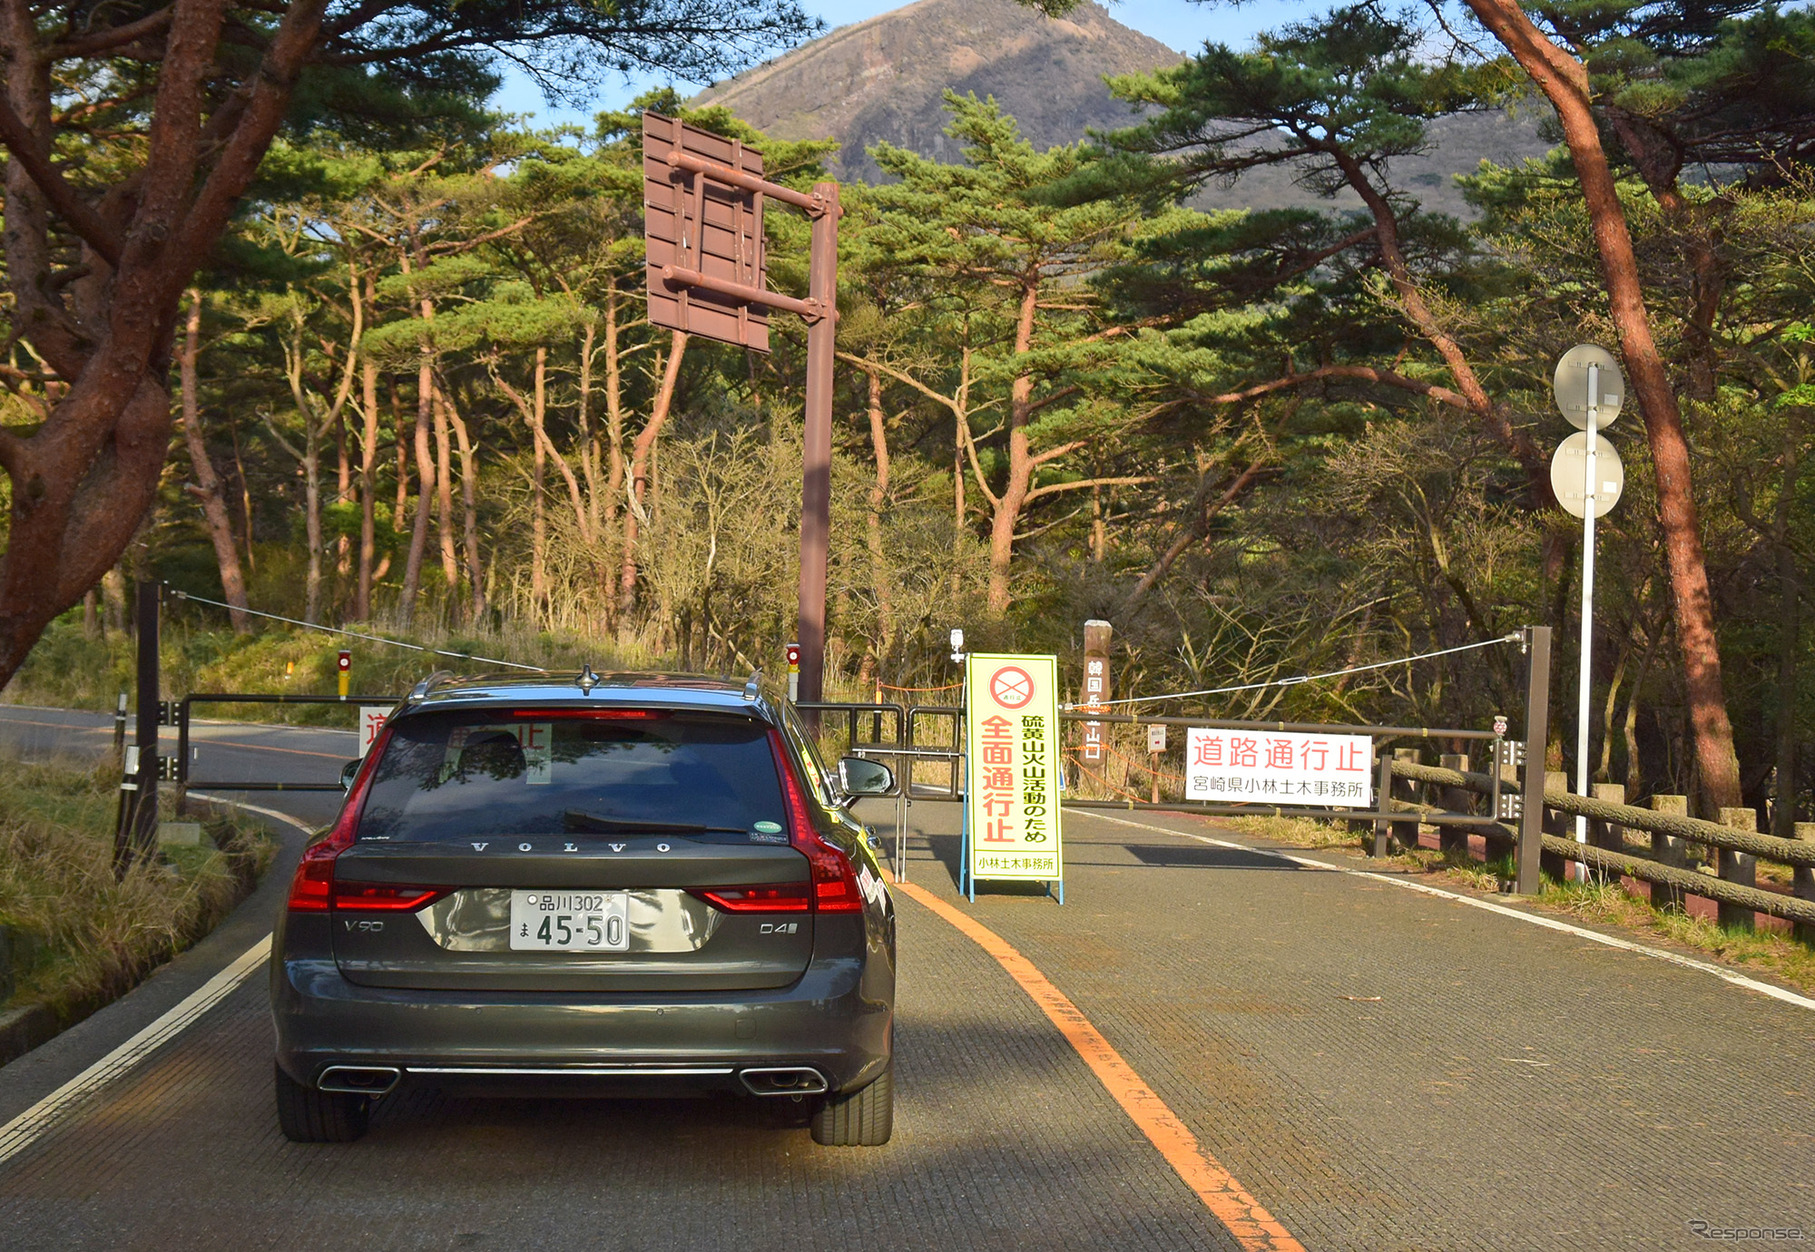 宮崎-鹿児島県境のえびの高原にて。最高にビューティフルな写真をと思って立ち寄ったのだが、火山性ガスの噴出で道路は閉鎖。一部崩落があるらしく、このまま別道路に付け替えになる見通しとのこと。